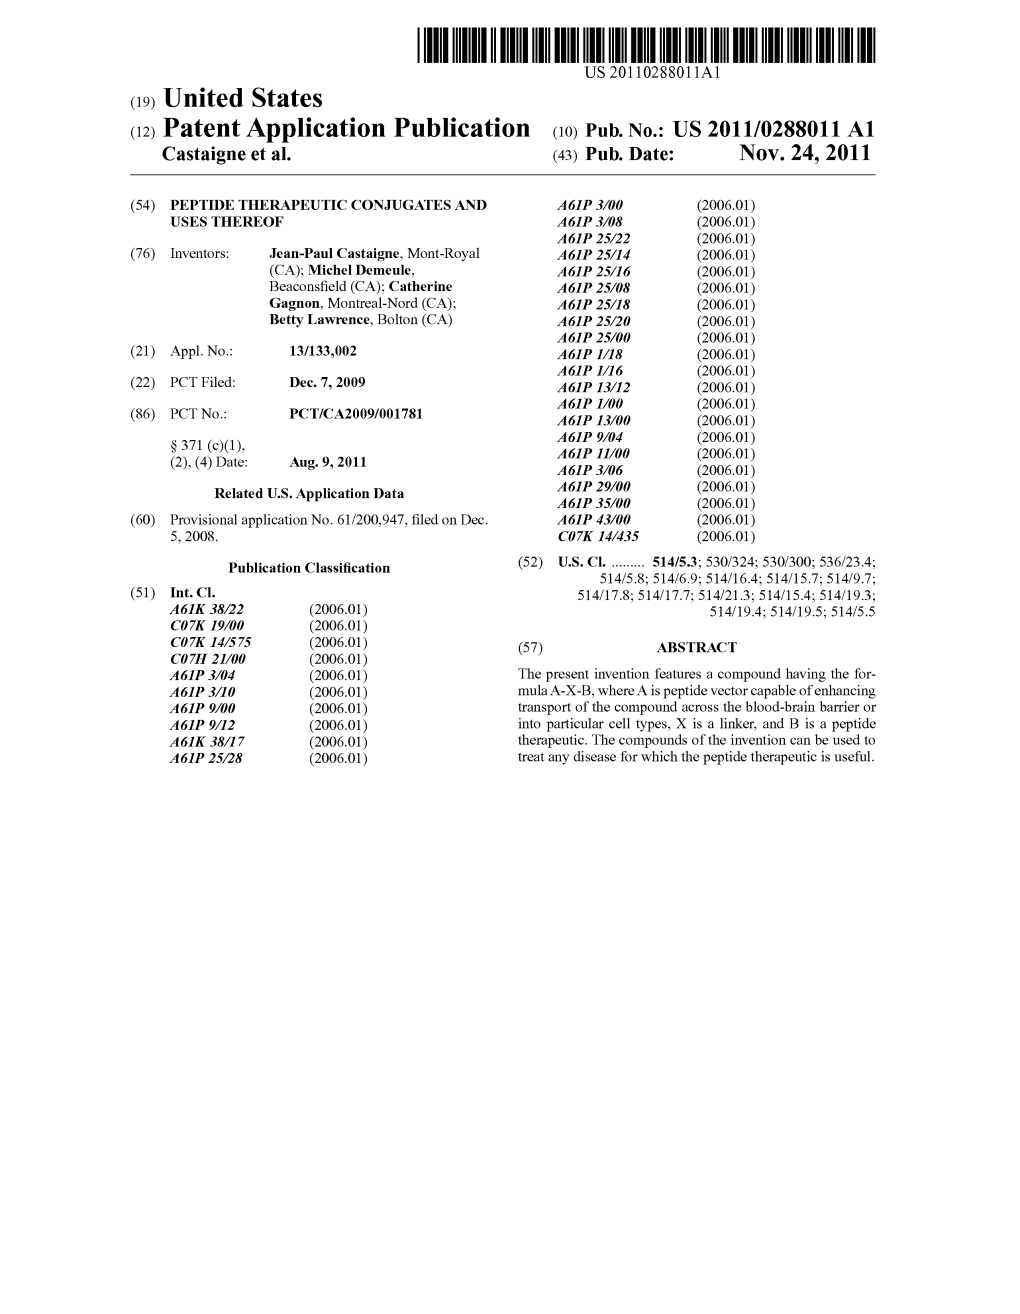 (2) Patent Application Publication (10) Pub. No.: US 2011/0288011 A1 Castaigne Et Al